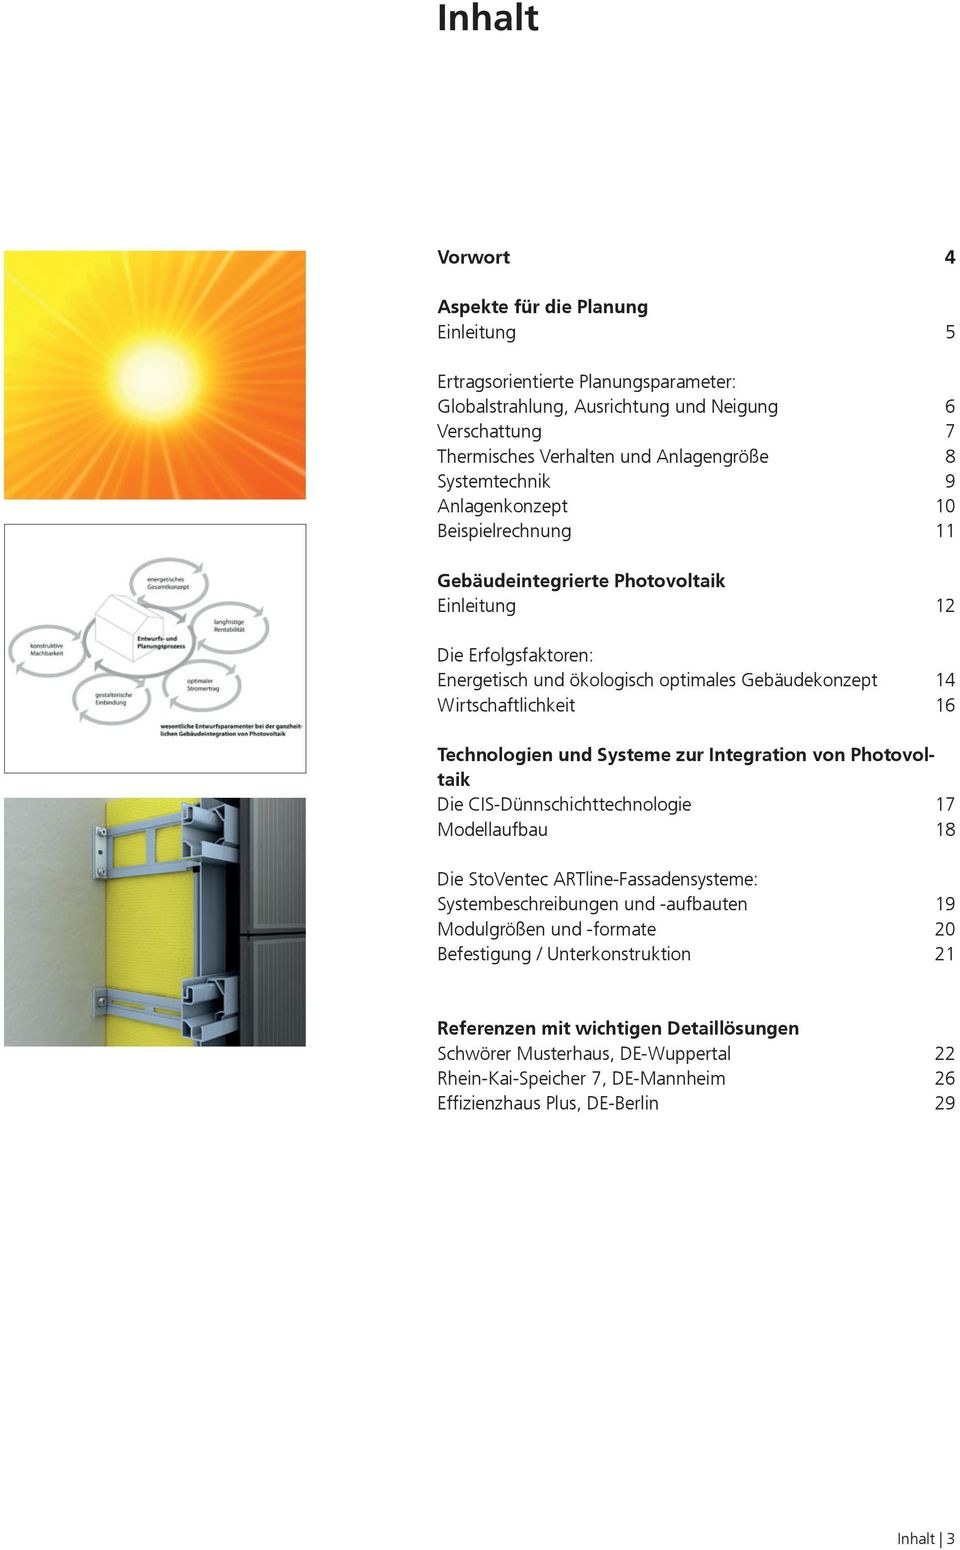 Technologien und Systeme zur Integration von Photovoltaik Die CIS-Dünnschichttechnologie 17 Modellaufbau 18 Die StoVentec ARTline-Fassadensysteme: Systembeschreibungen und -aufbauten 19 Modulgrößen